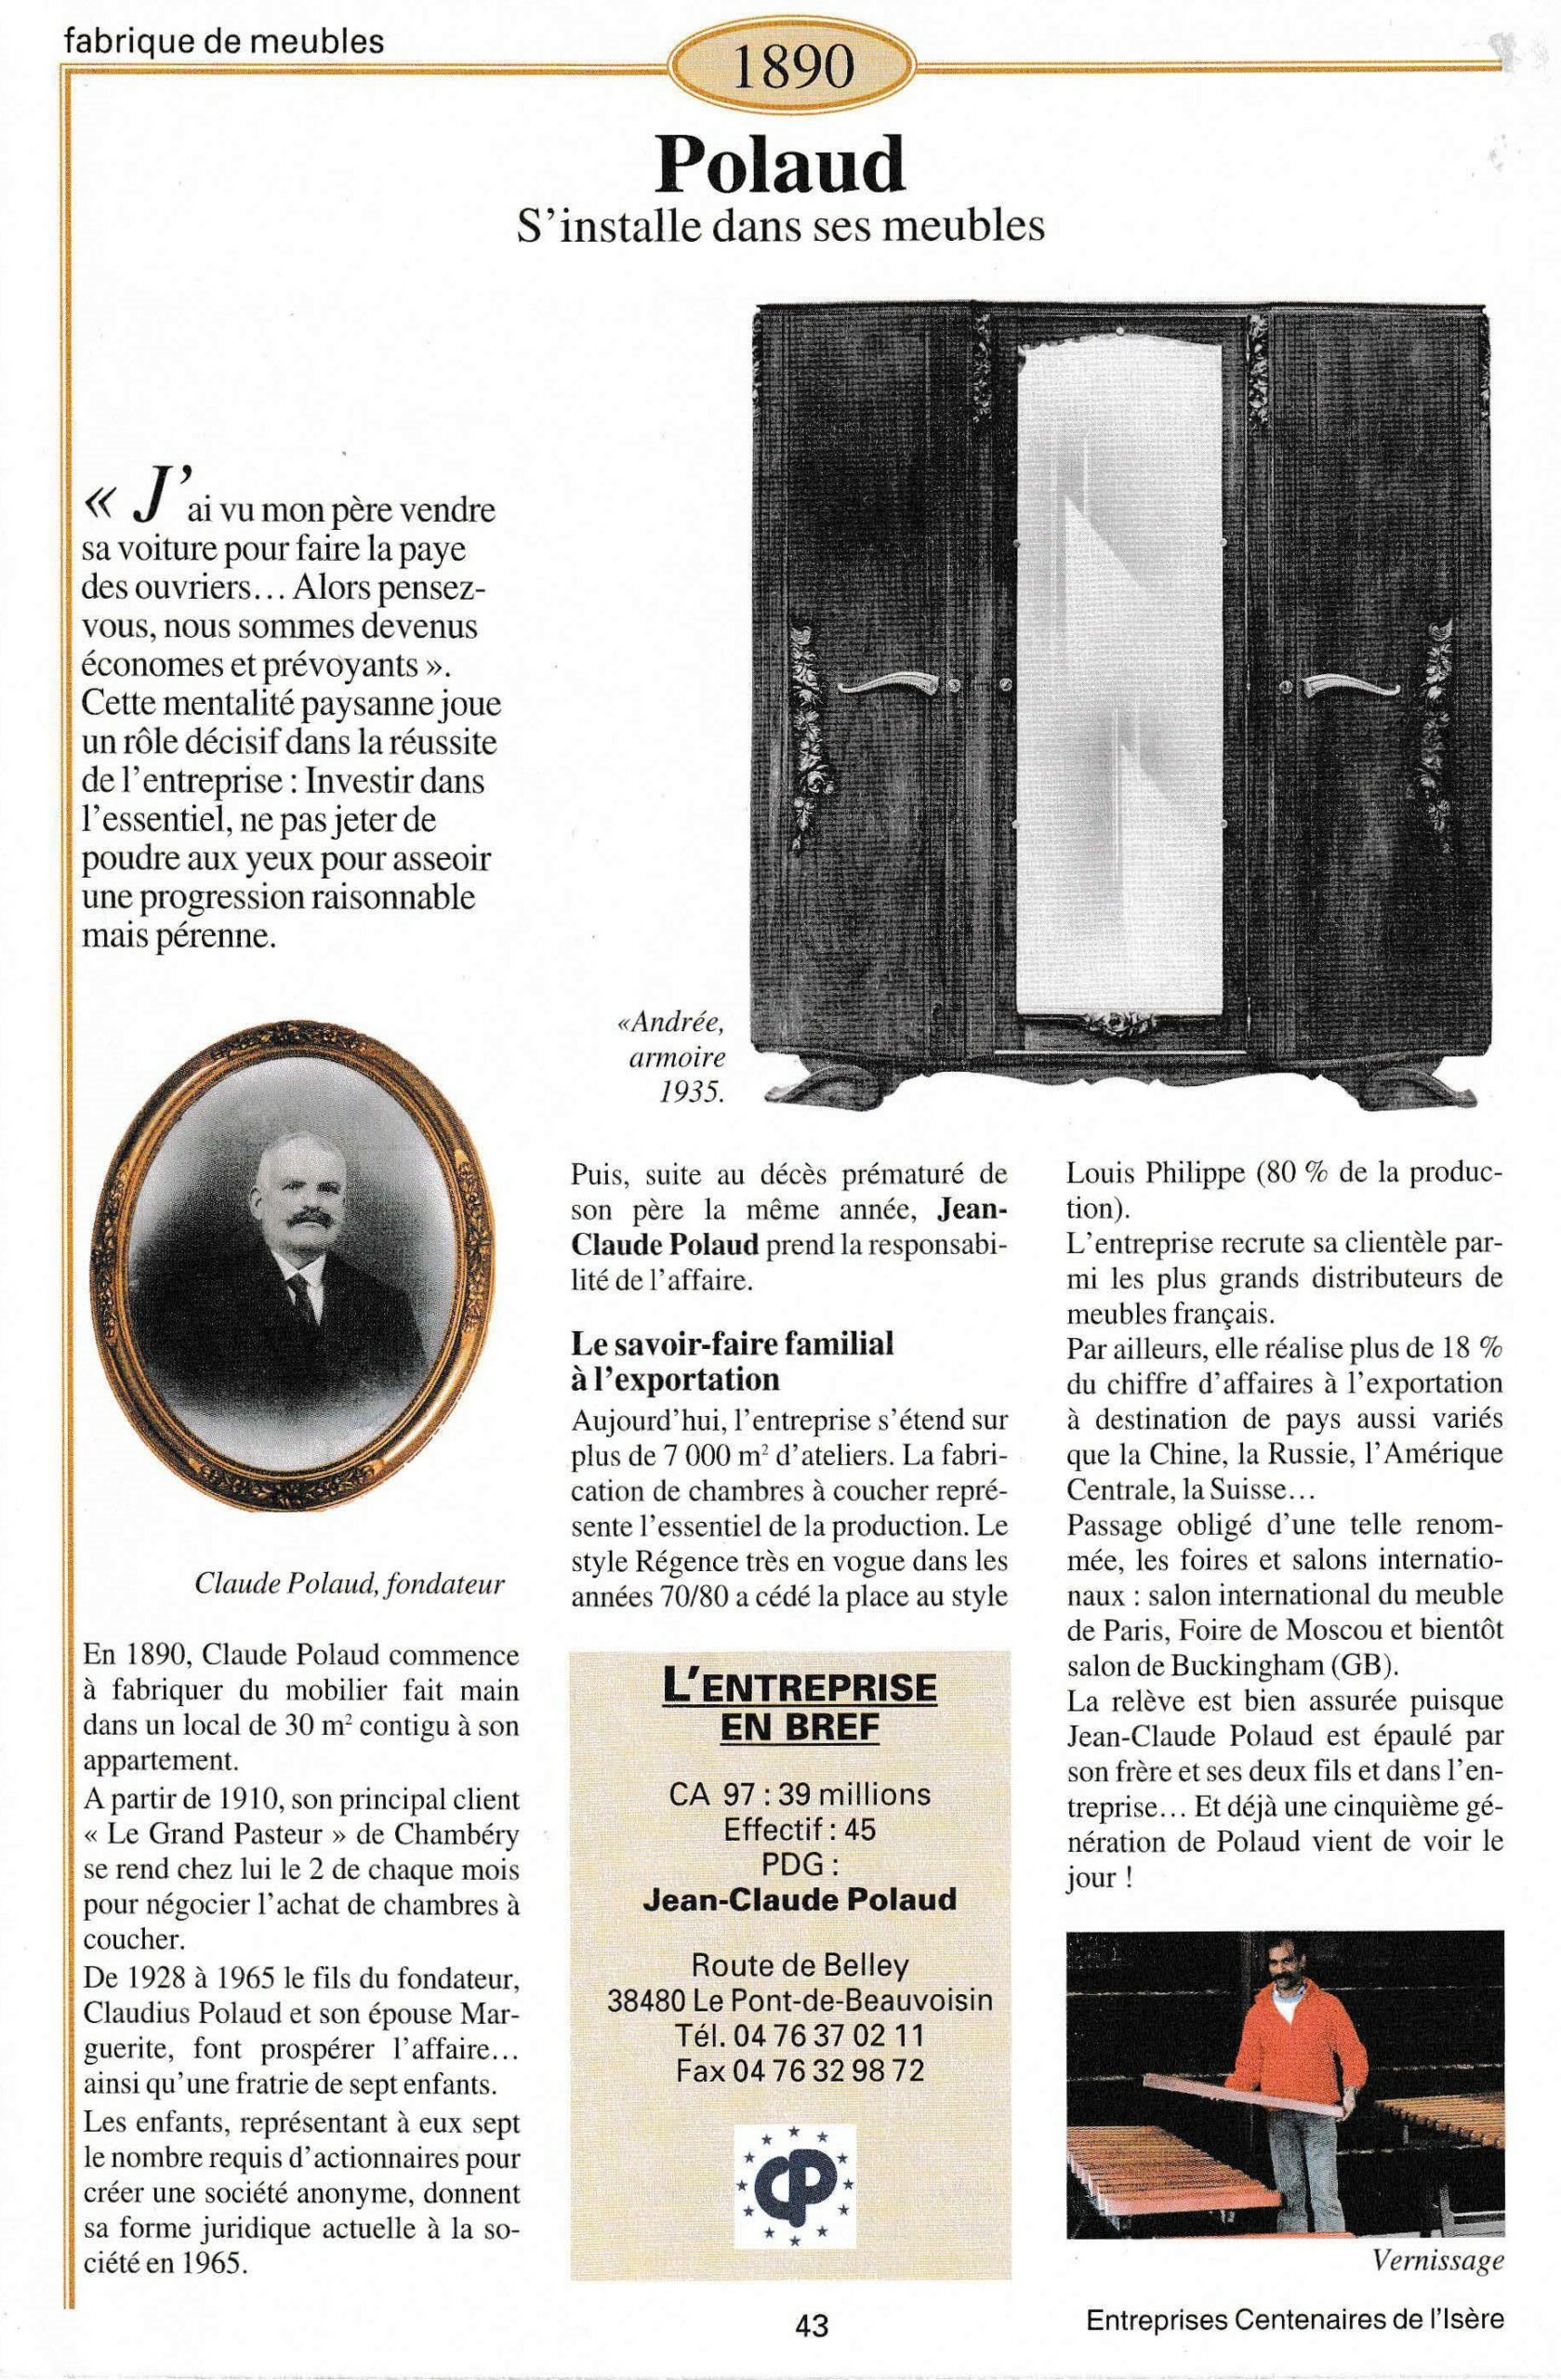 Polaud - fiche du supplément "Entreprises centenaires en Isère", publié par Les affiches de Grenoble et du Dauphiné, juin 1998.